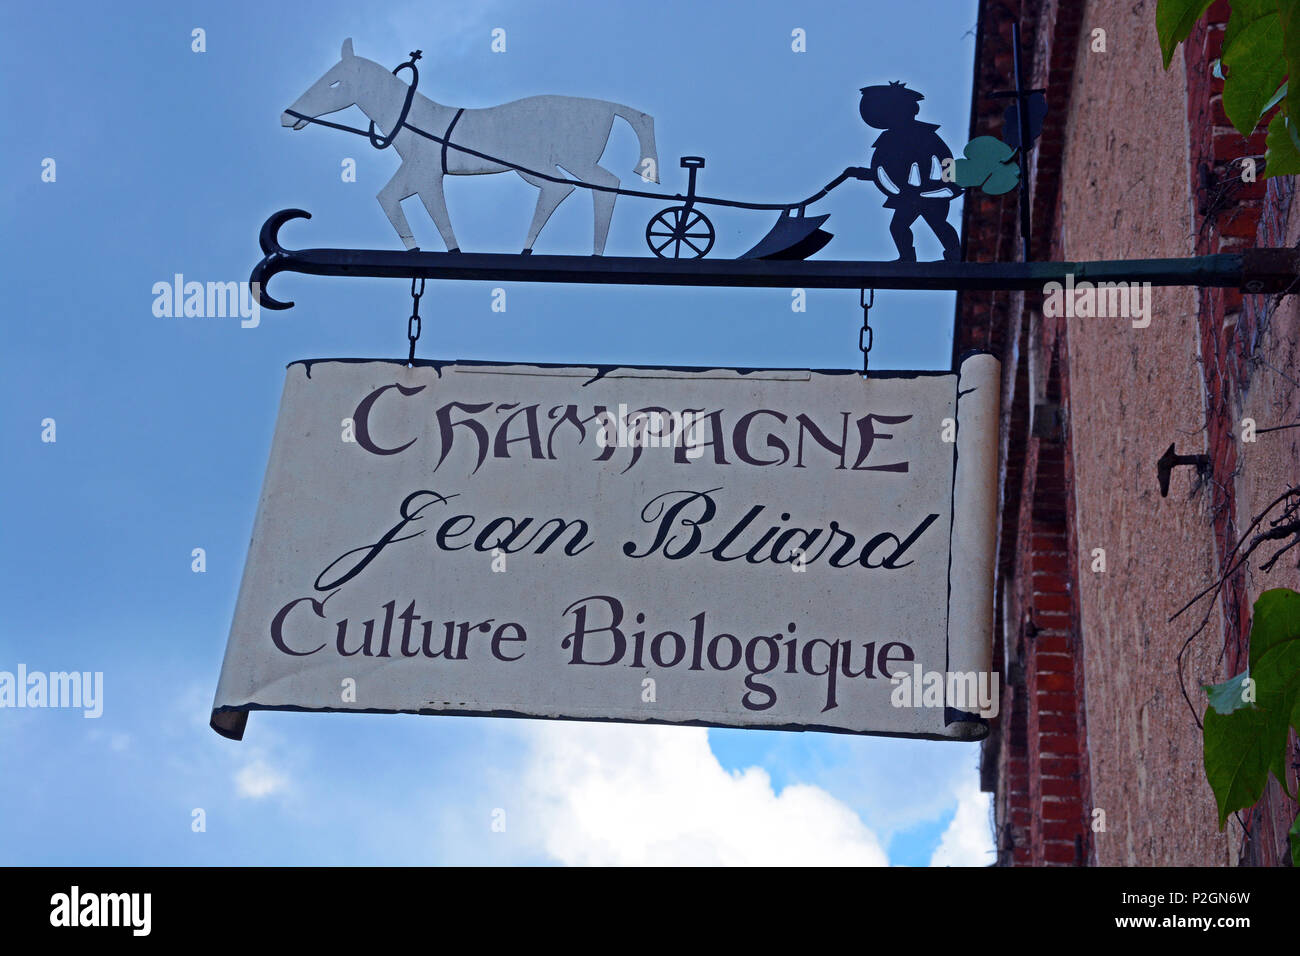 Sign en dehors de vigneron dans le quartier de champagne, blade 2 Jean Bliard, bilogic Hautvilliers, agriculture, Marne, Champagne-Ardennes, France Banque D'Images